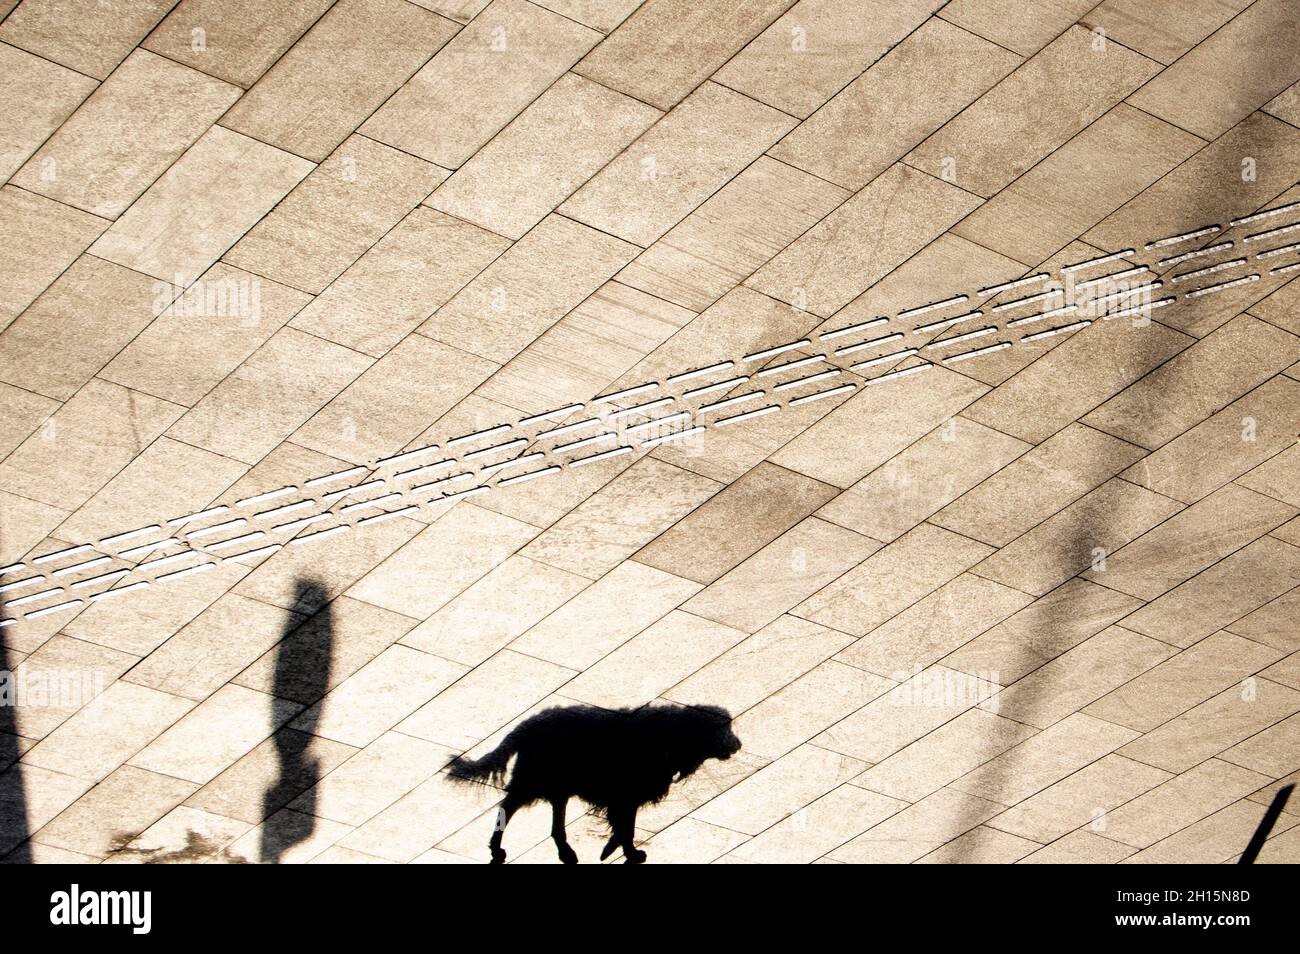 Baldosas indicadoras de pavimentación táctil y silueta de sombra de un perro caminando solo en la calle de la ciudad en sepia blanco y negro Foto de stock